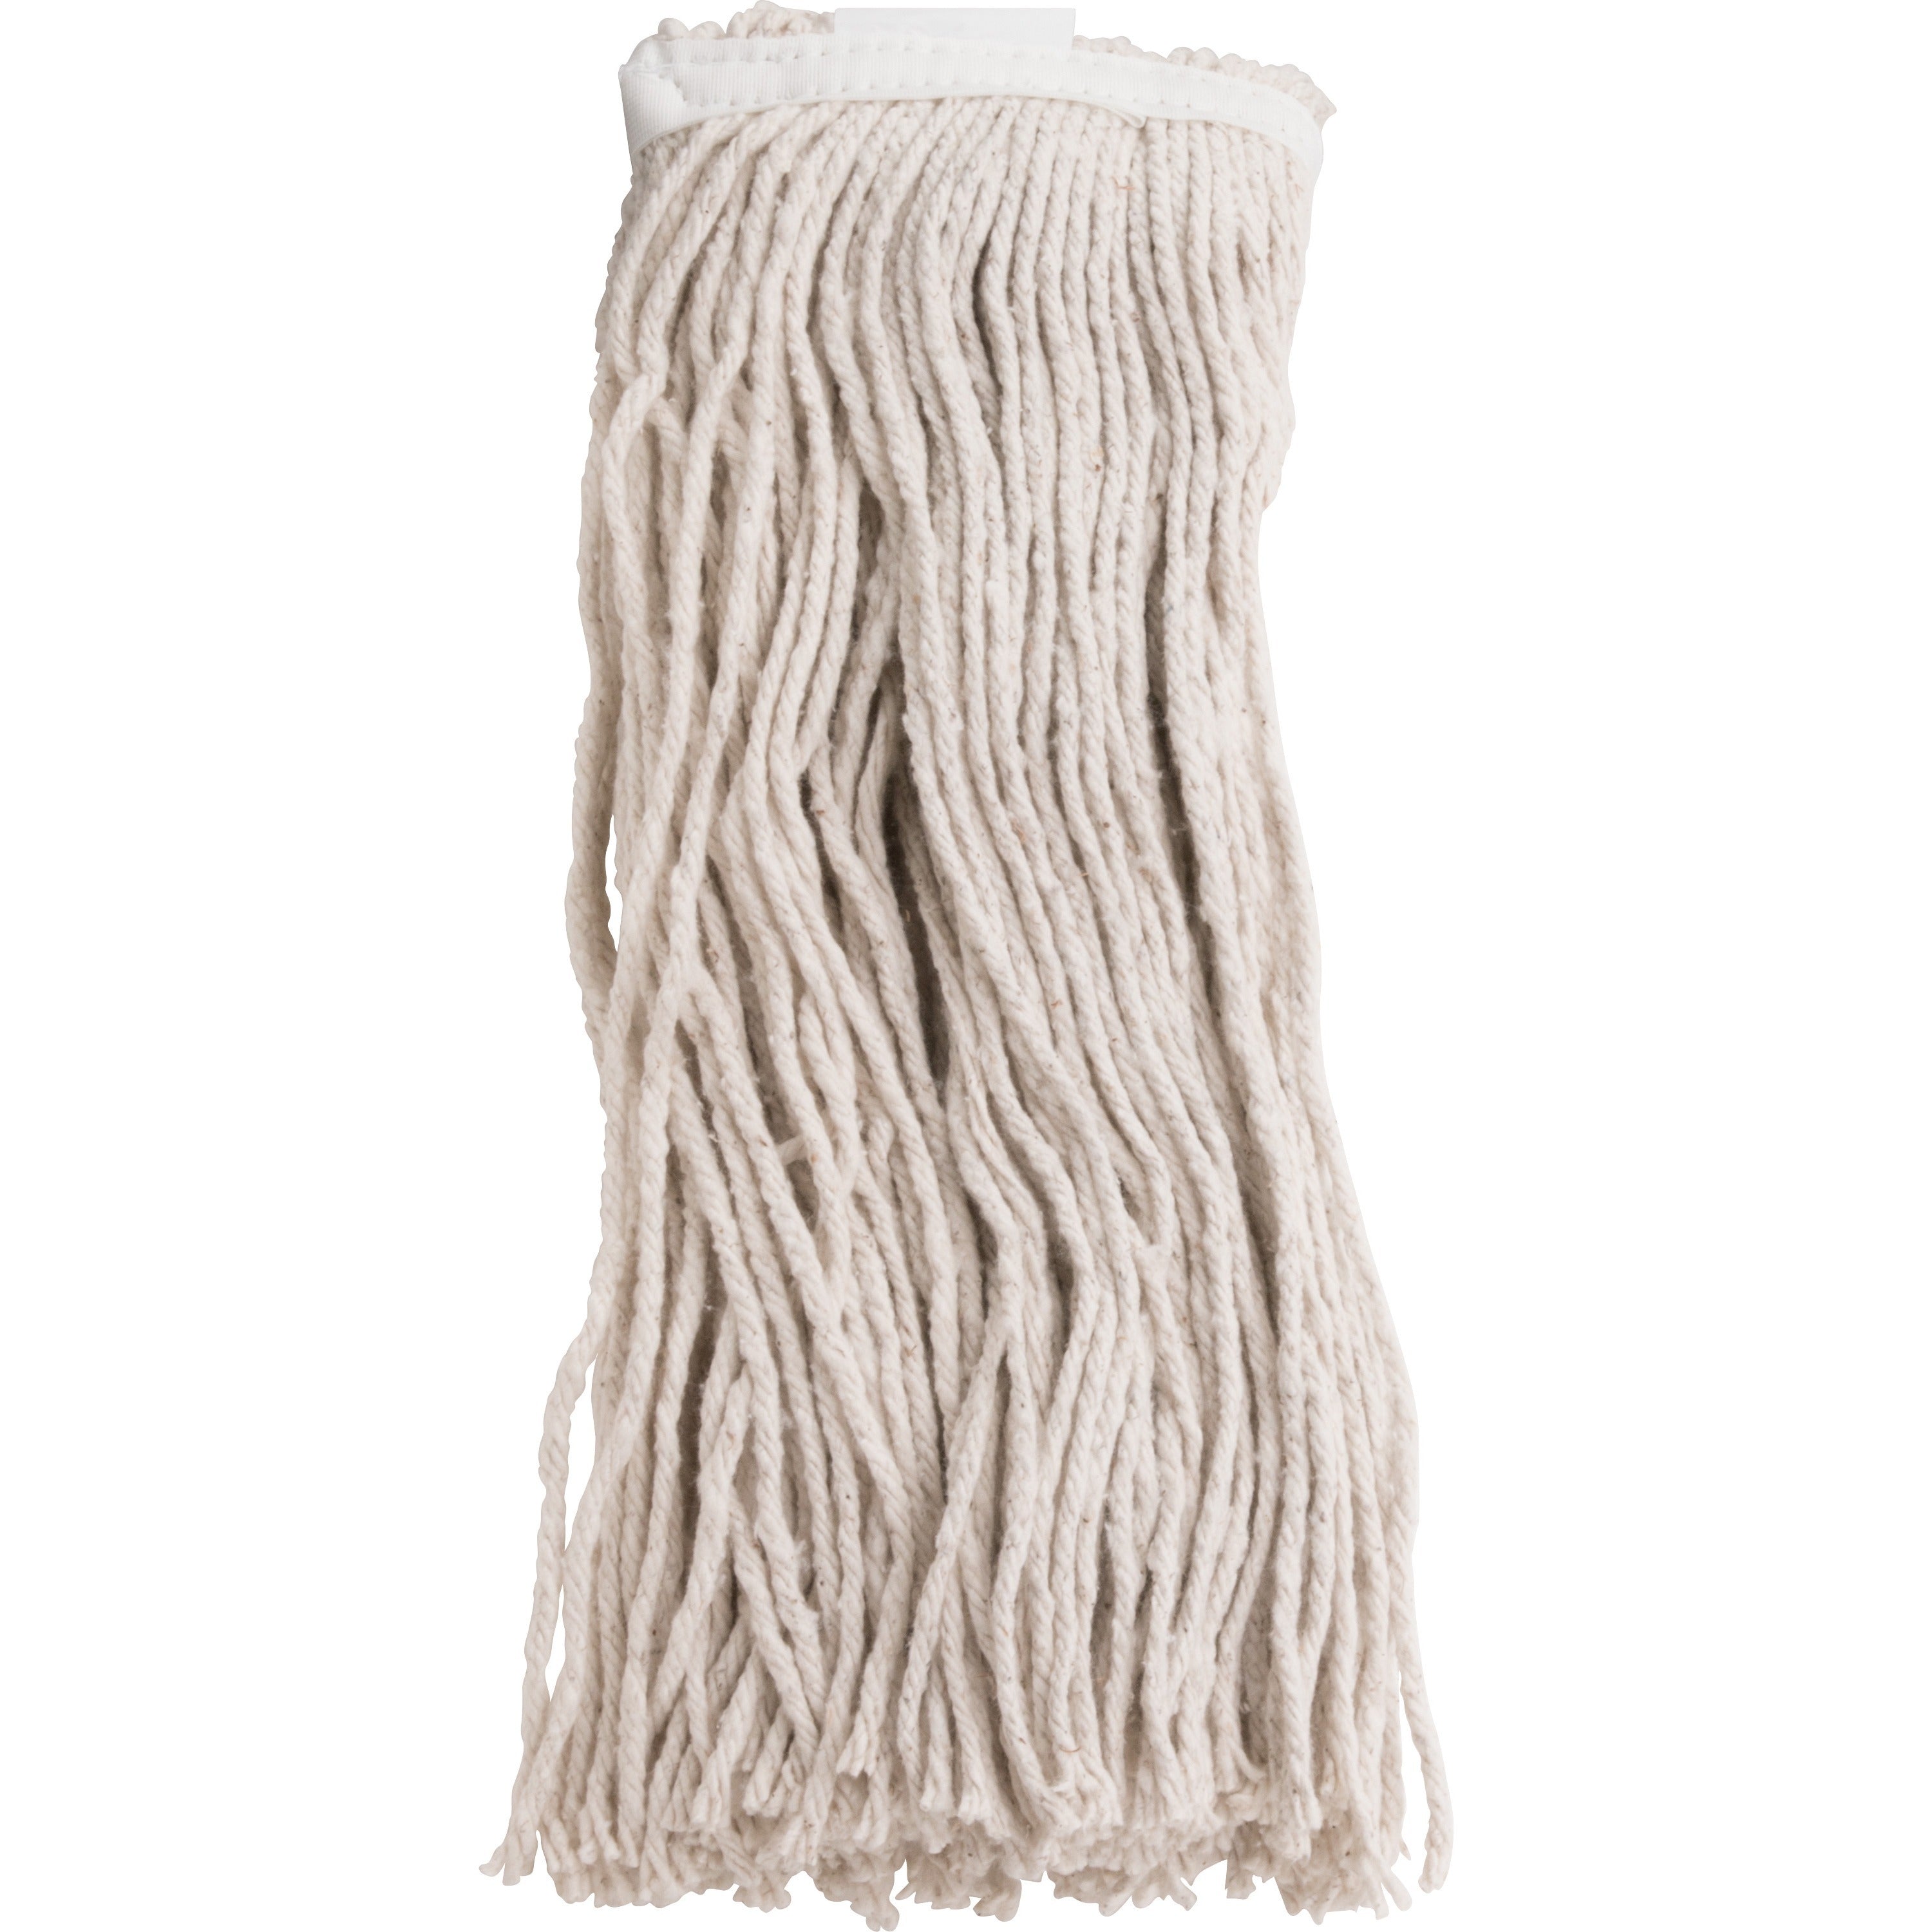 genuine-joe-cotton-blend-mop-refill-polyester-rayon-cotton-natural-1each_gjo48260 - 1